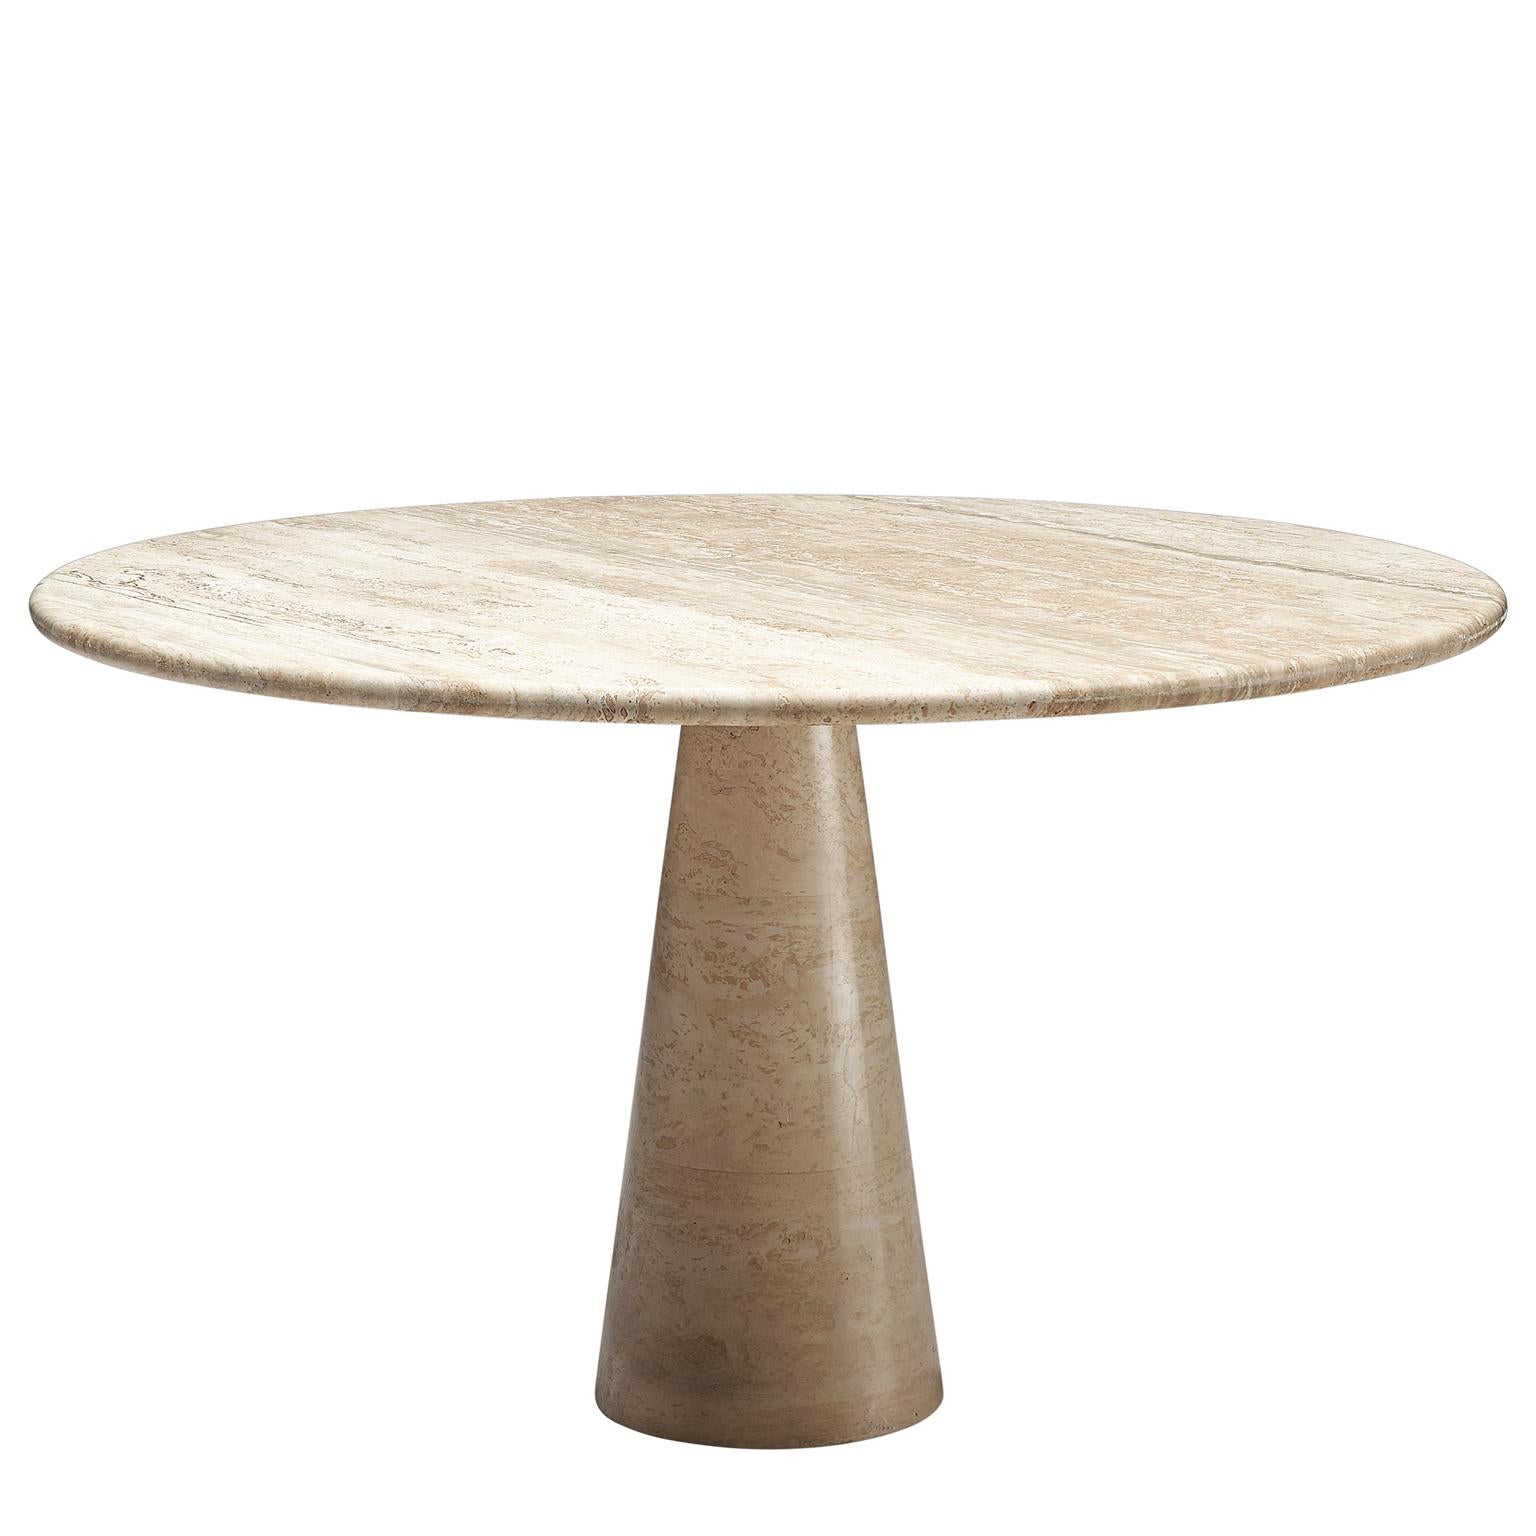 Round Travertine Pedestal Table